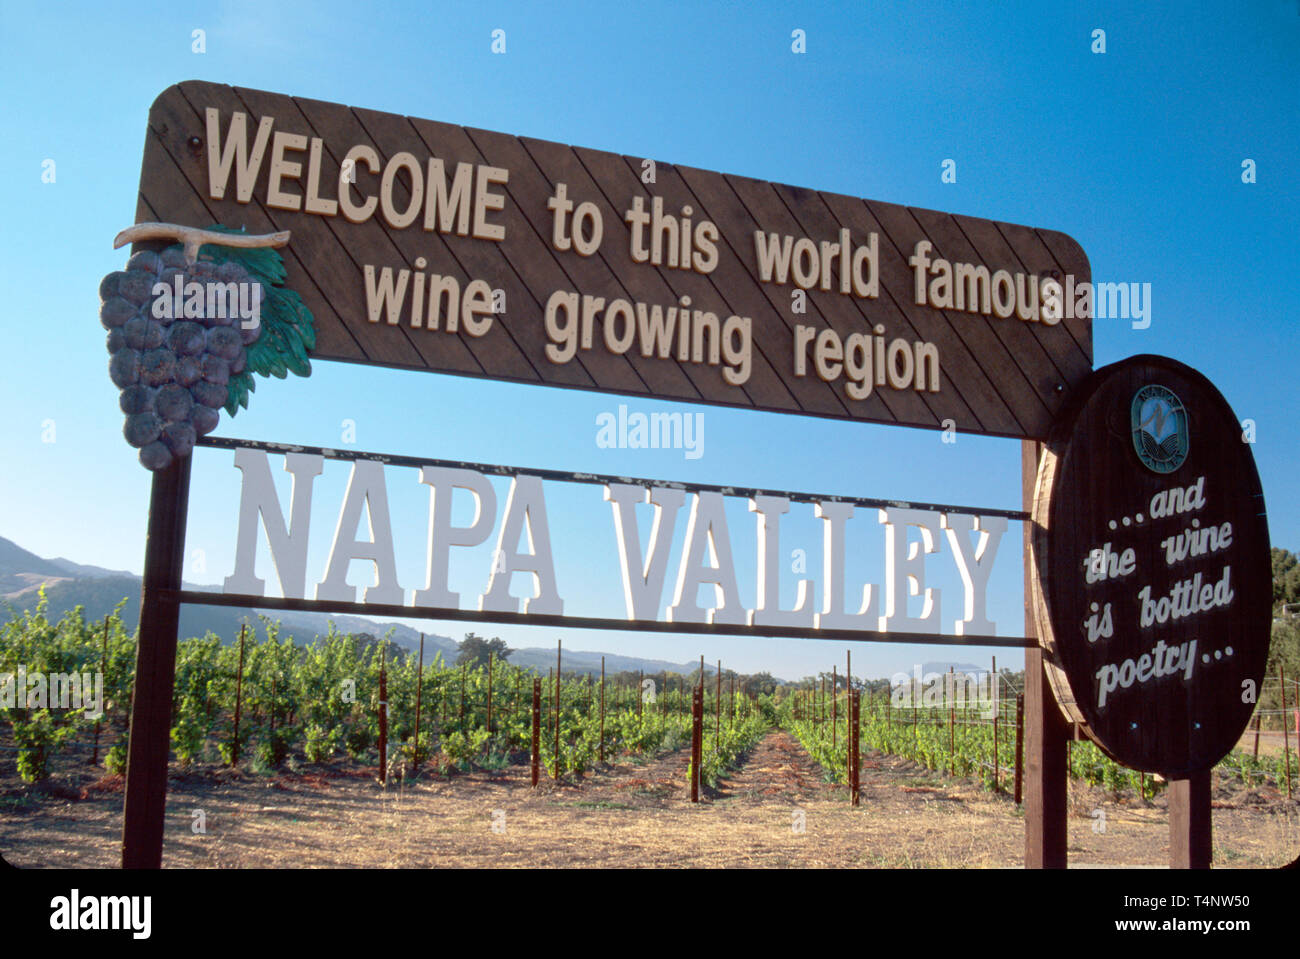 California Napa Valley région viticole d'Oakville signe de bienvenue,information,annoncer,marché,avis,lire,apprendre,vignoble CA155,CA155 Banque D'Images